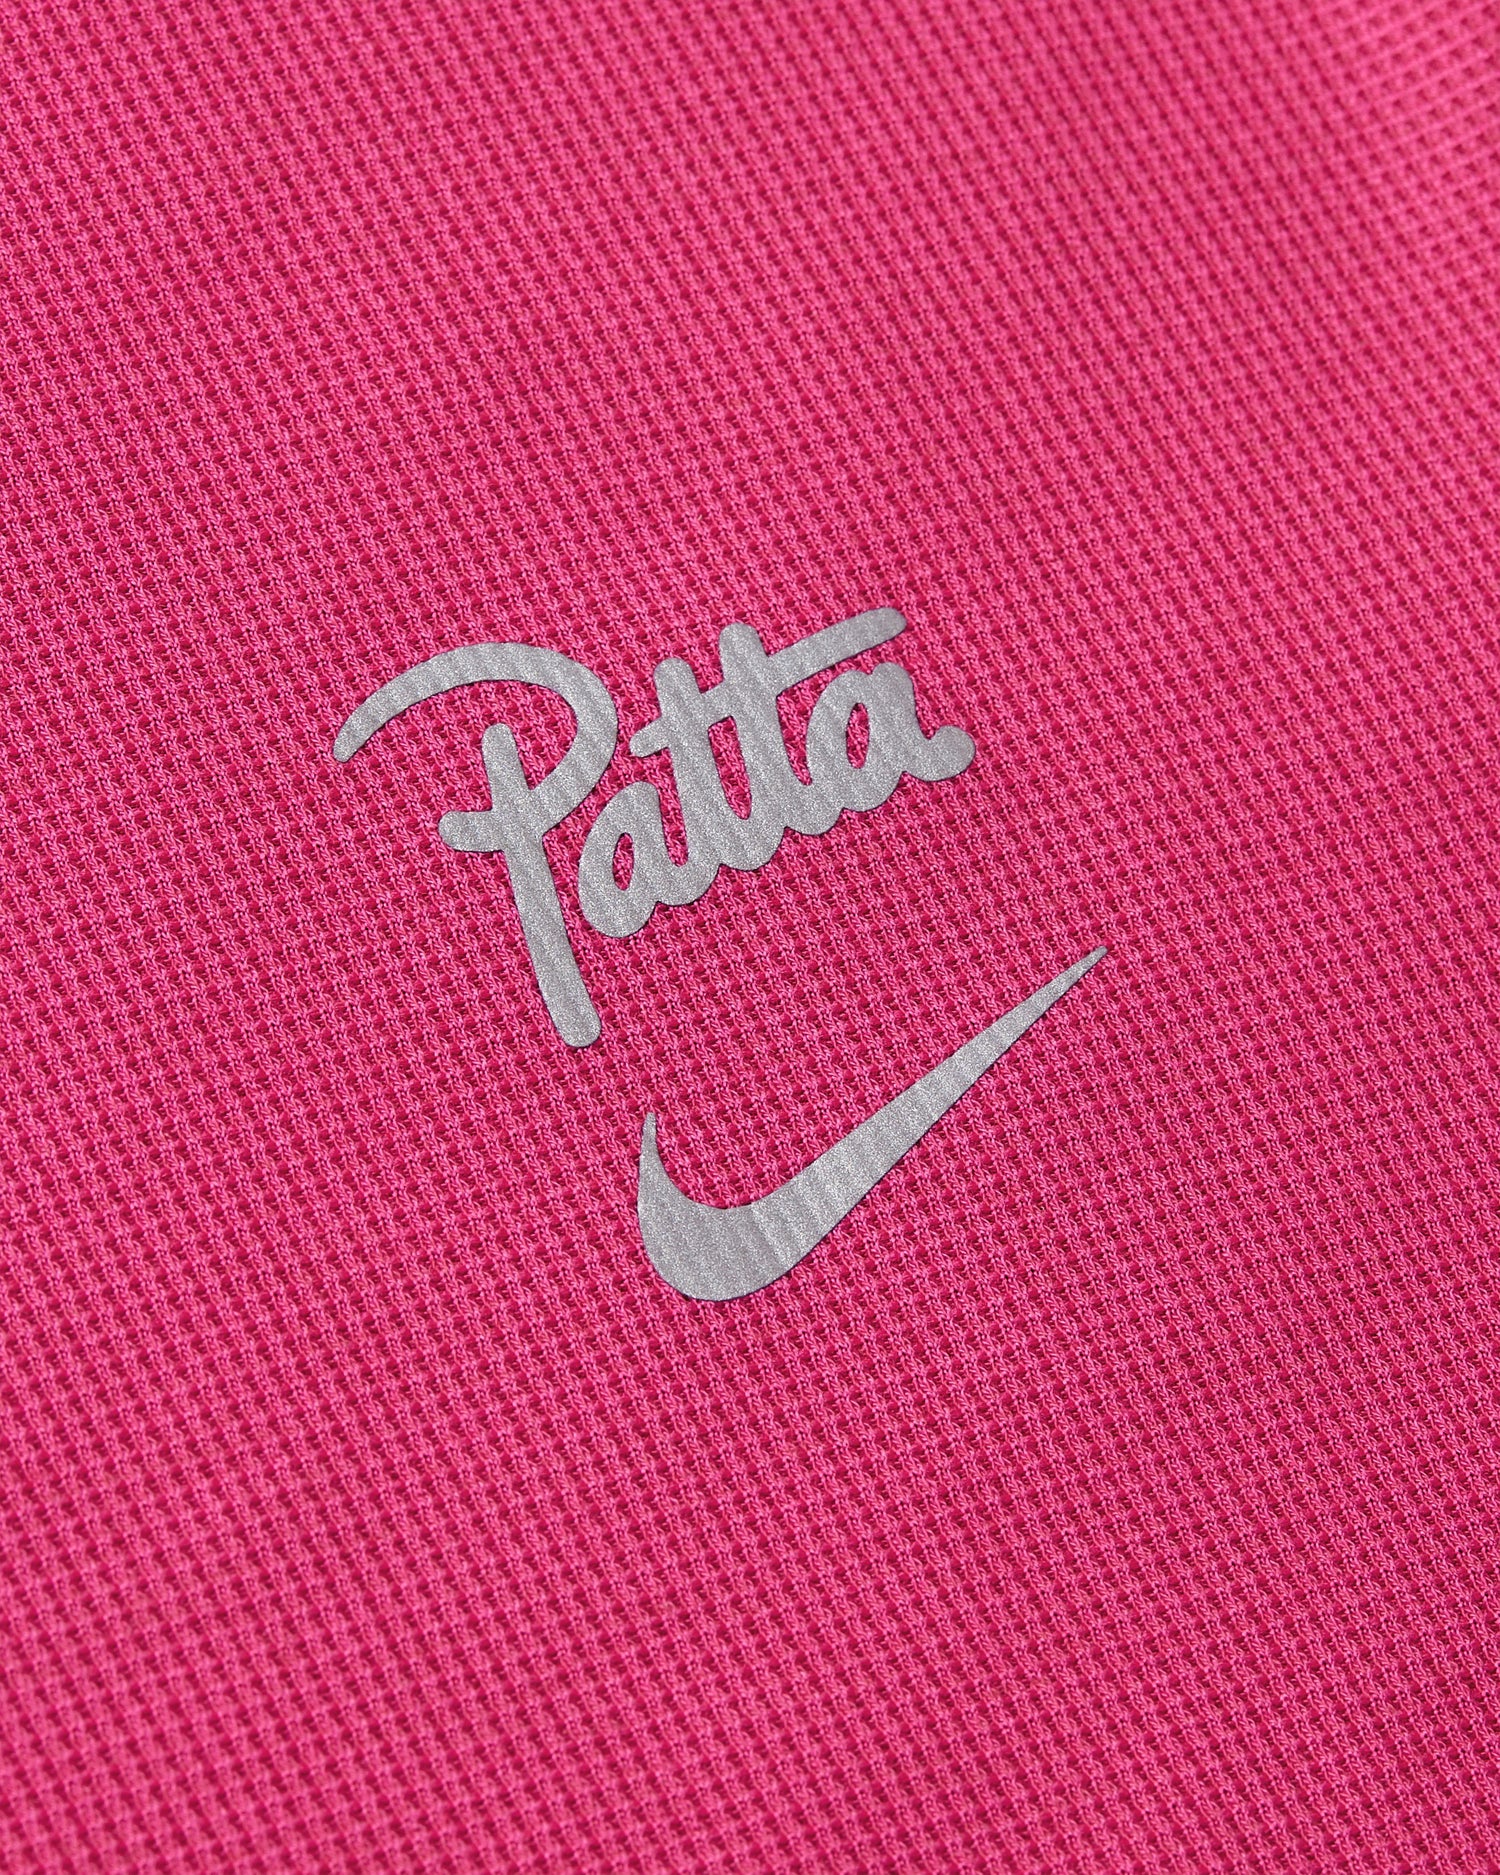 Nike x Patta Running Team T-shirt (Fireberry)